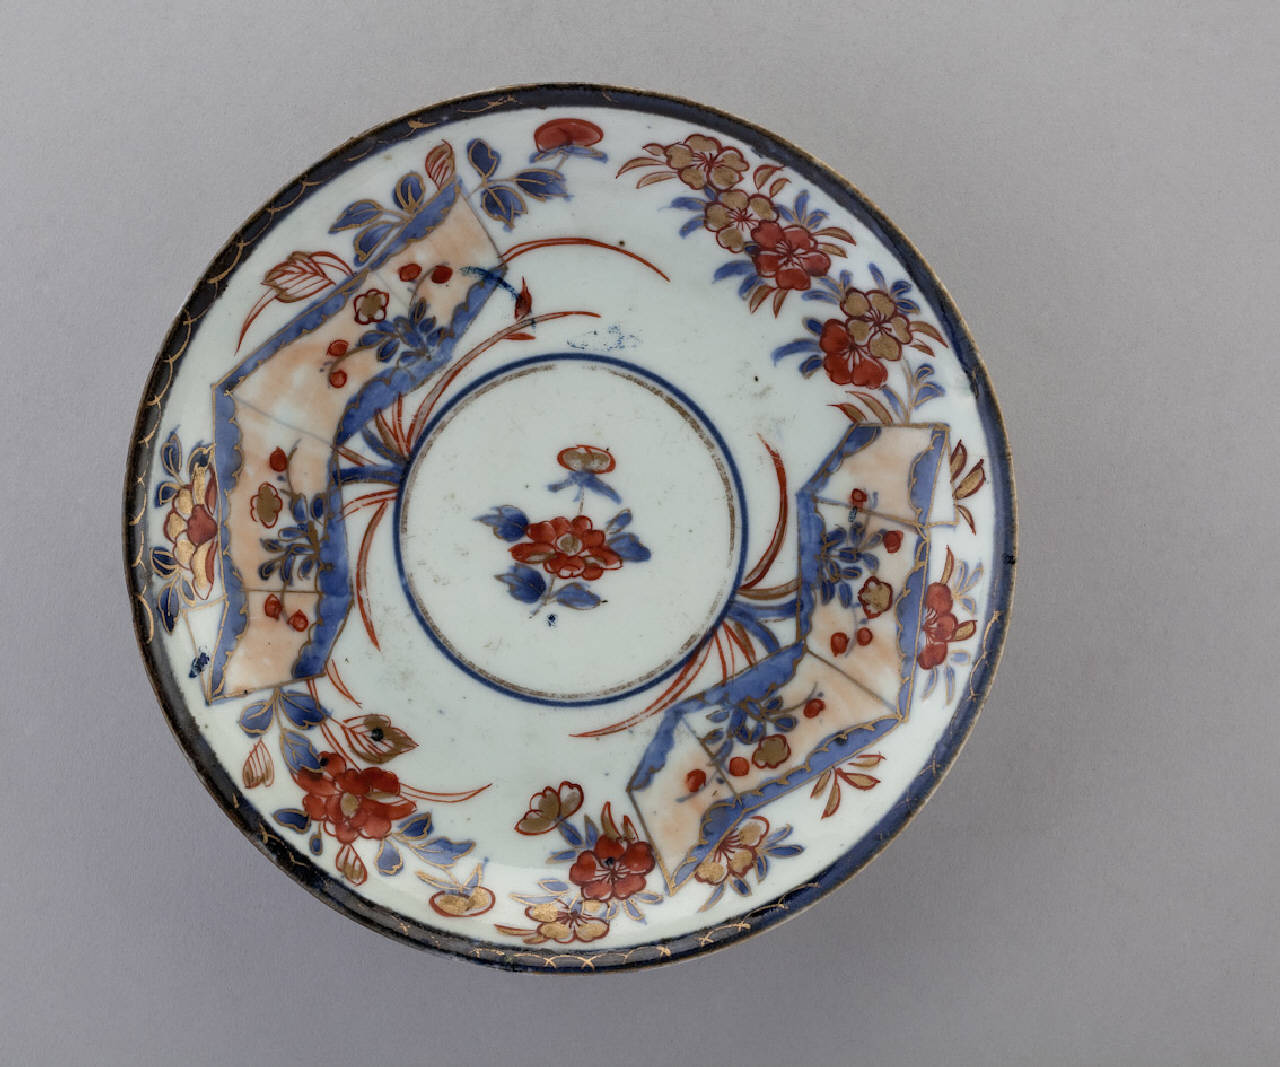 motivi decorativi floreali (piattino) - manifattura giapponese (prima metà sec. XVIII)